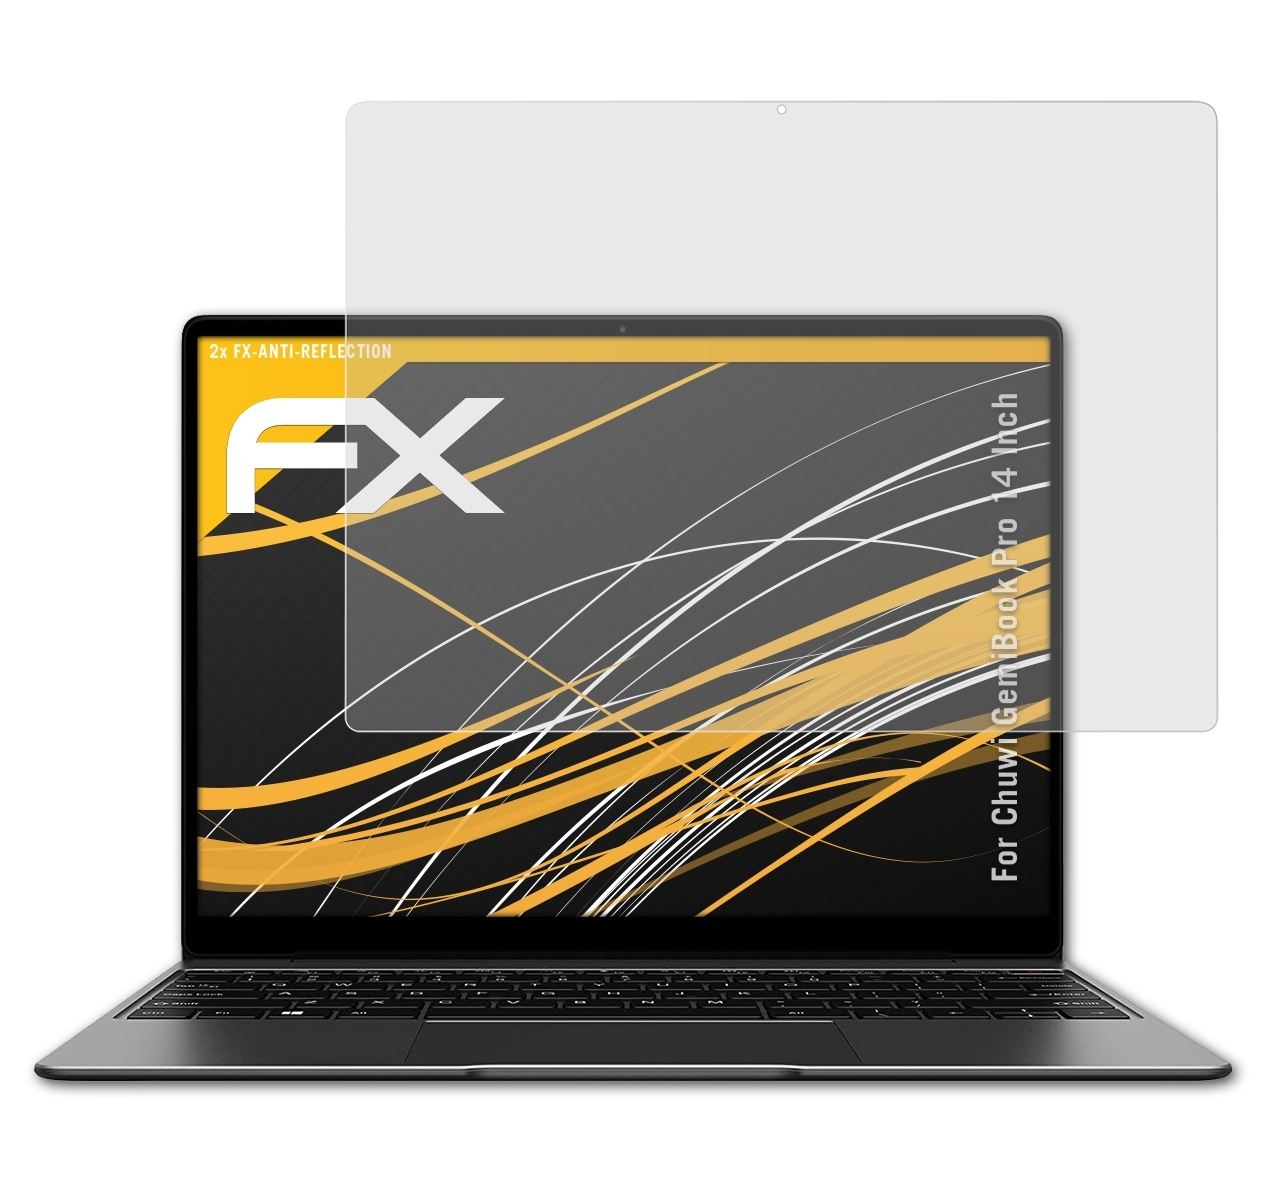 Inch)) Pro Displayschutz(für FX-Antireflex GemiBook (14 2x ATFOLIX Chuwi